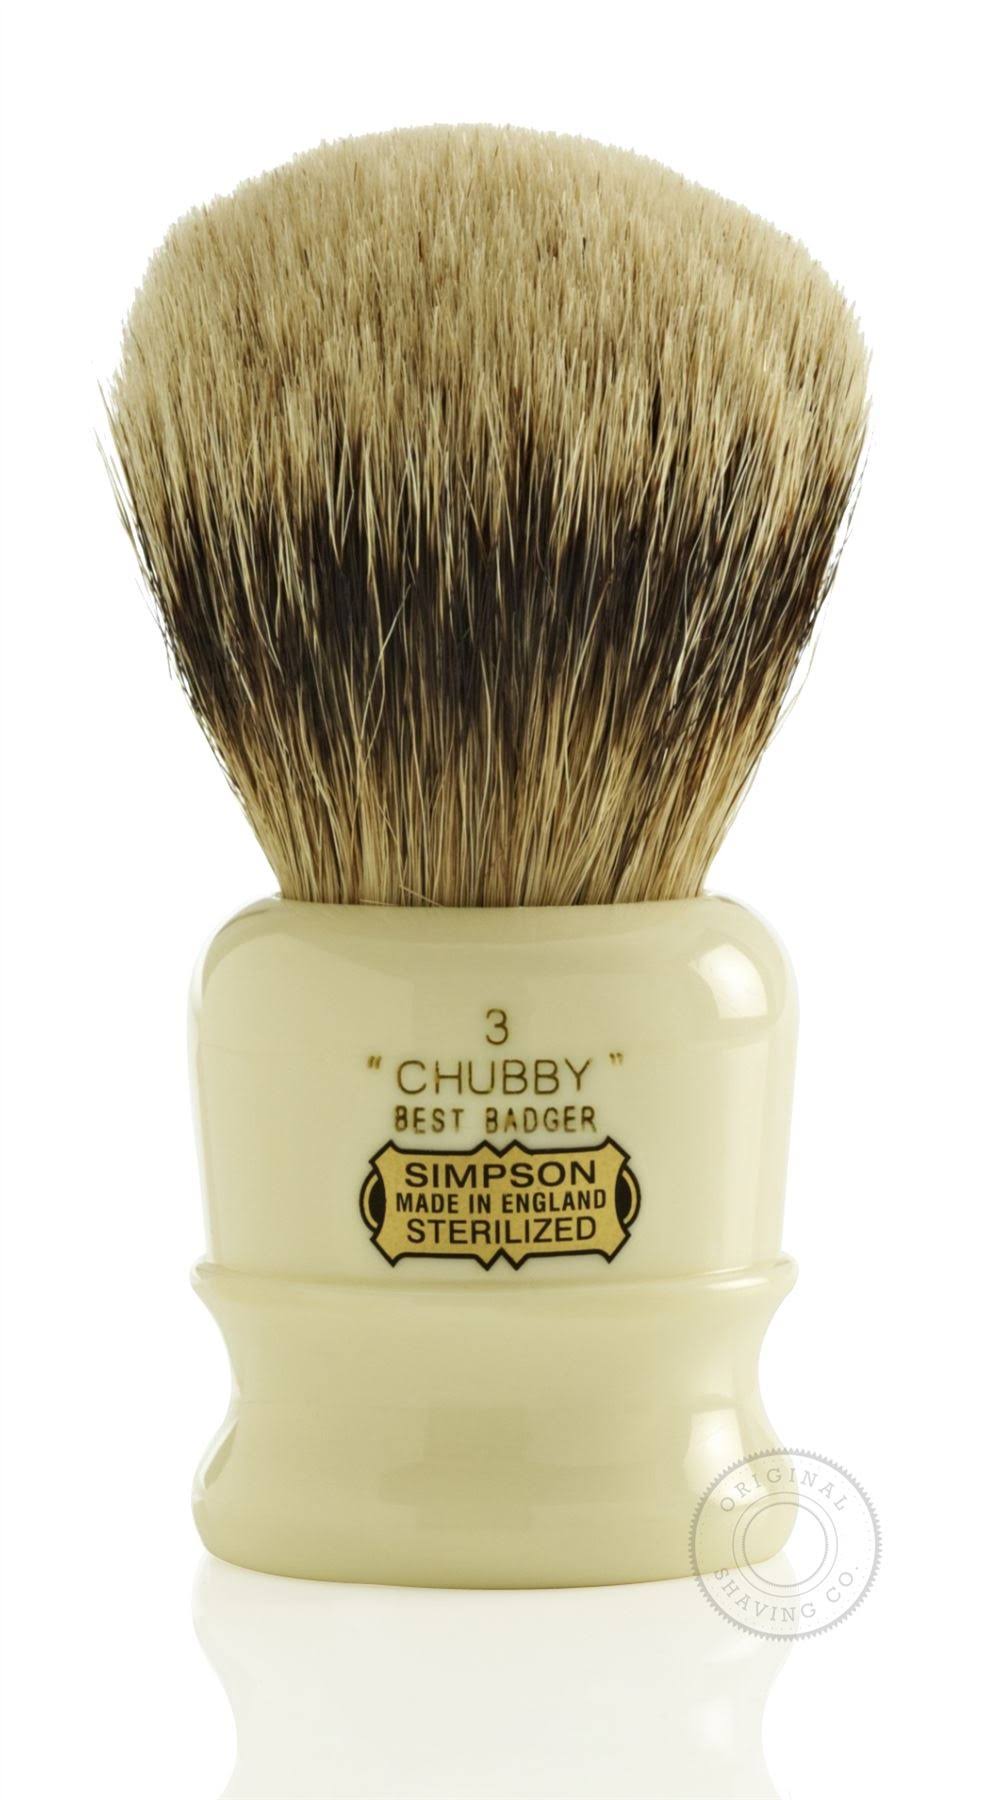 Simpsons Chubby Best Badger Shaving Brush - 3